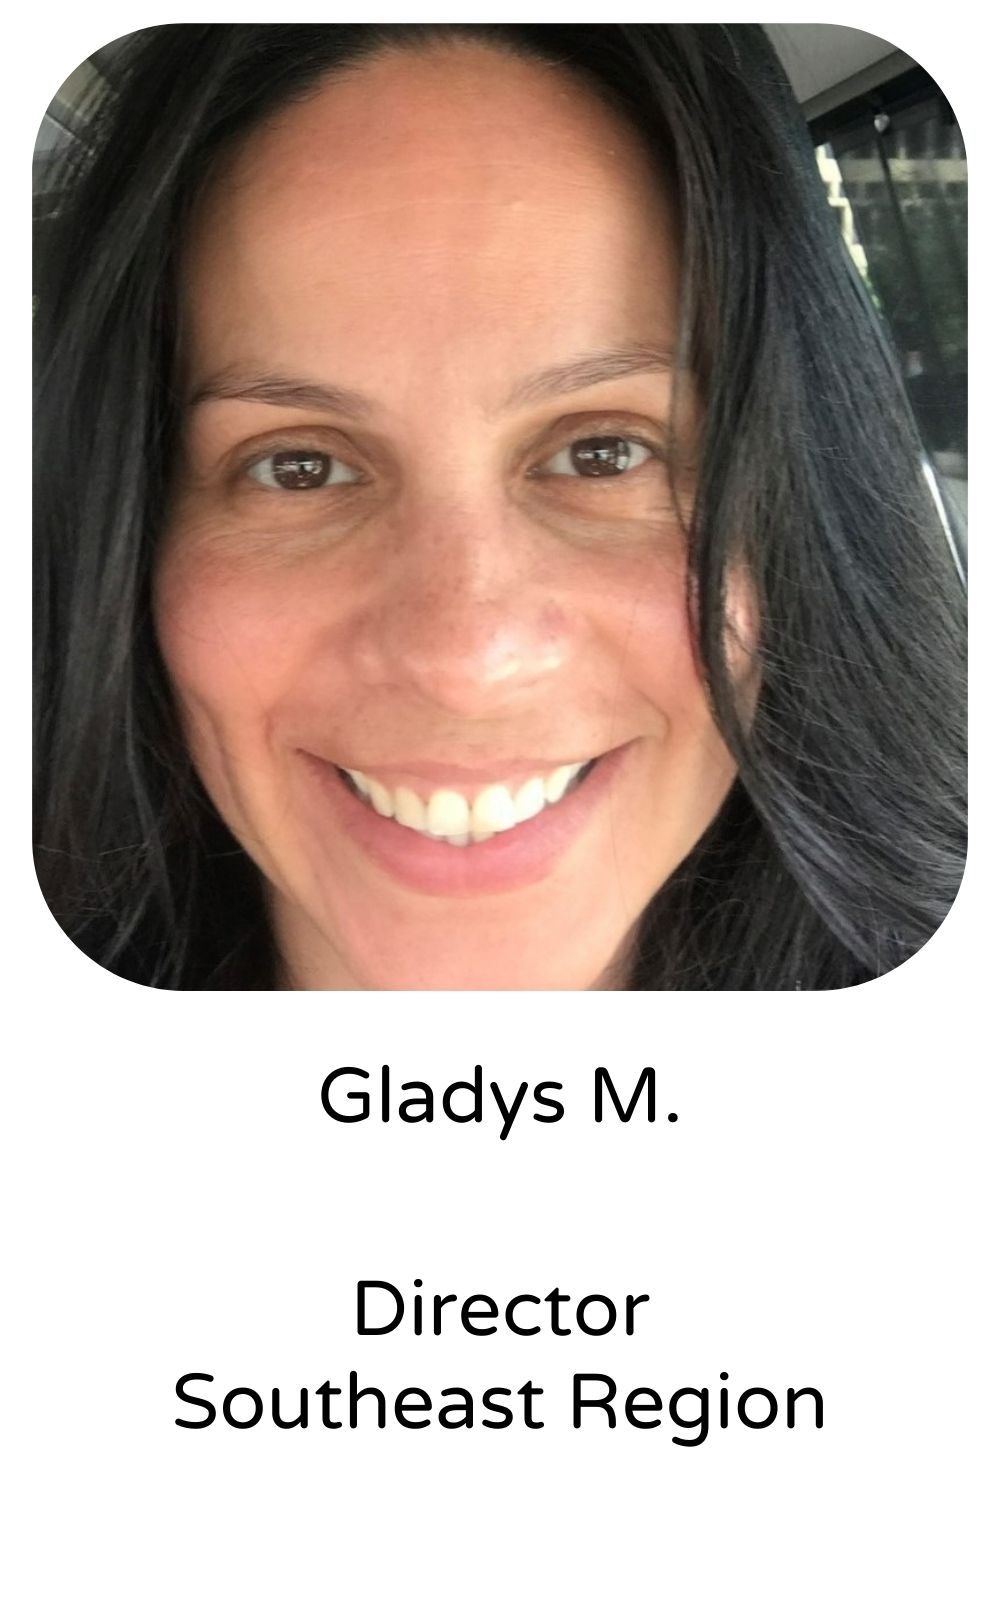 Gladys M, Director, Southeast Region